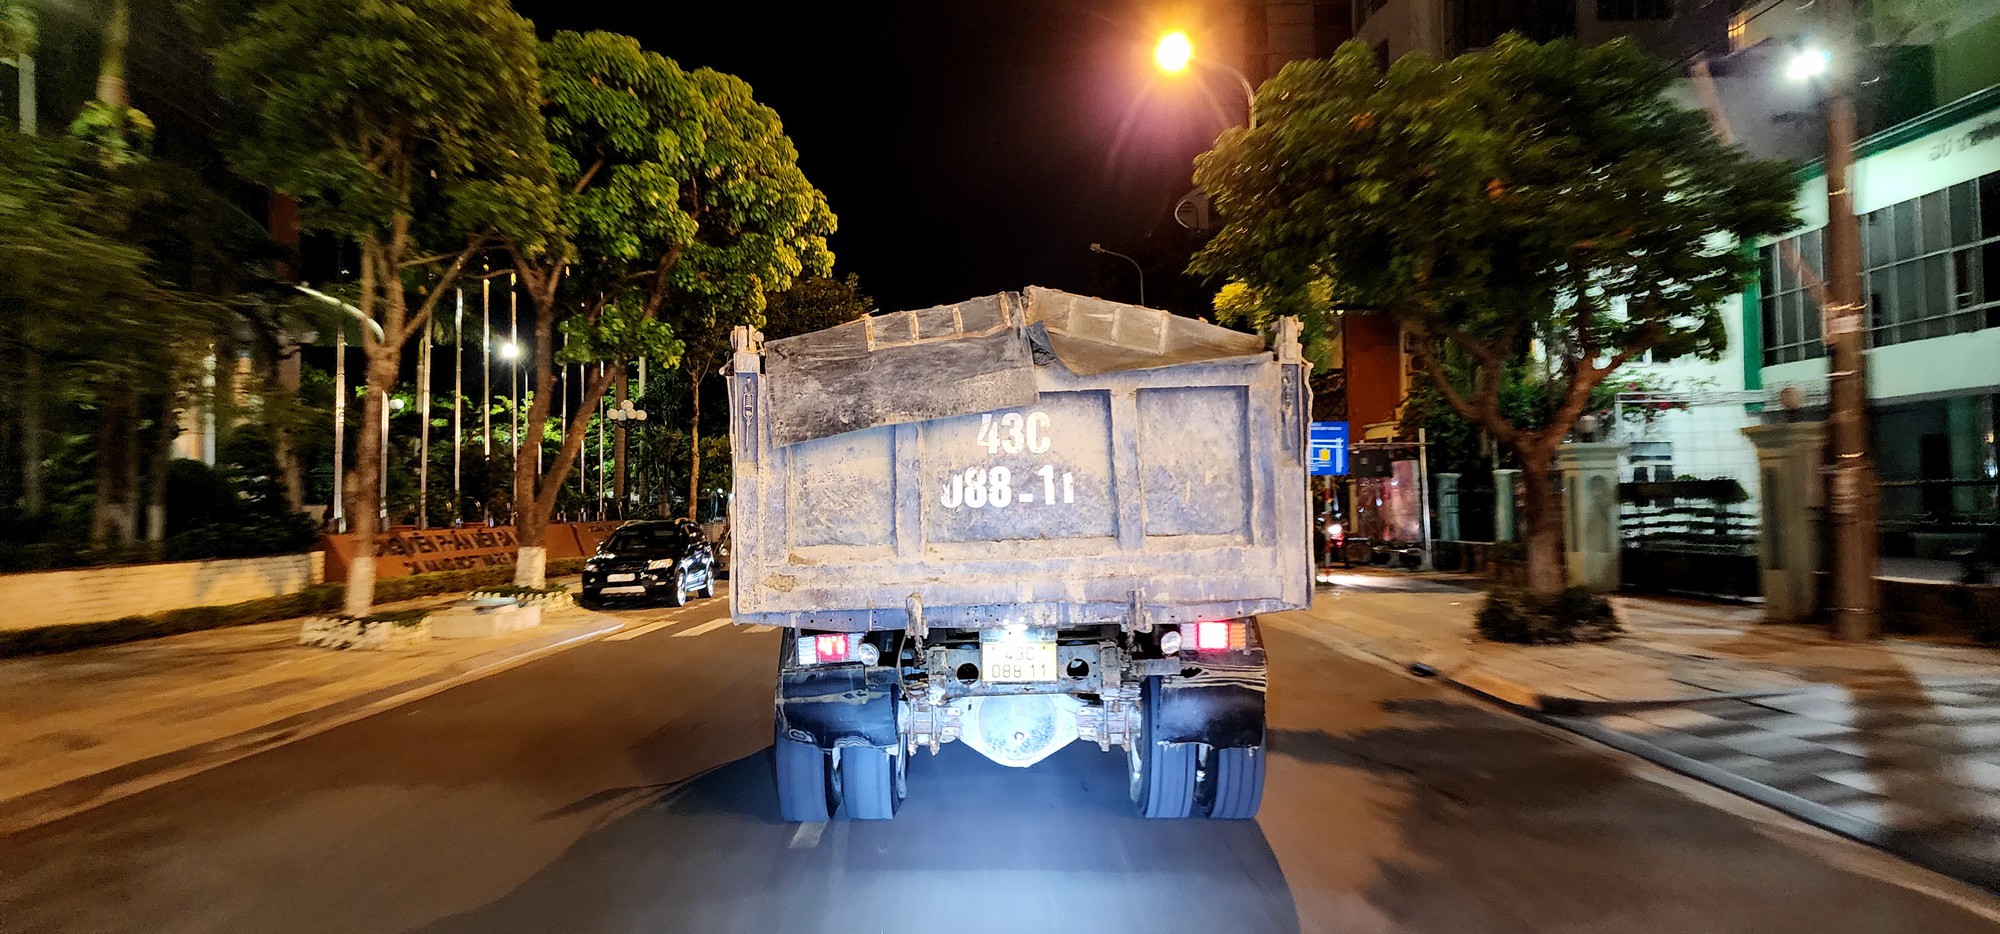 Đoàn xe tải trọng lớn lộng hành vào đường cấm ngay trung tâm Đà Nẵng - Ảnh 3.